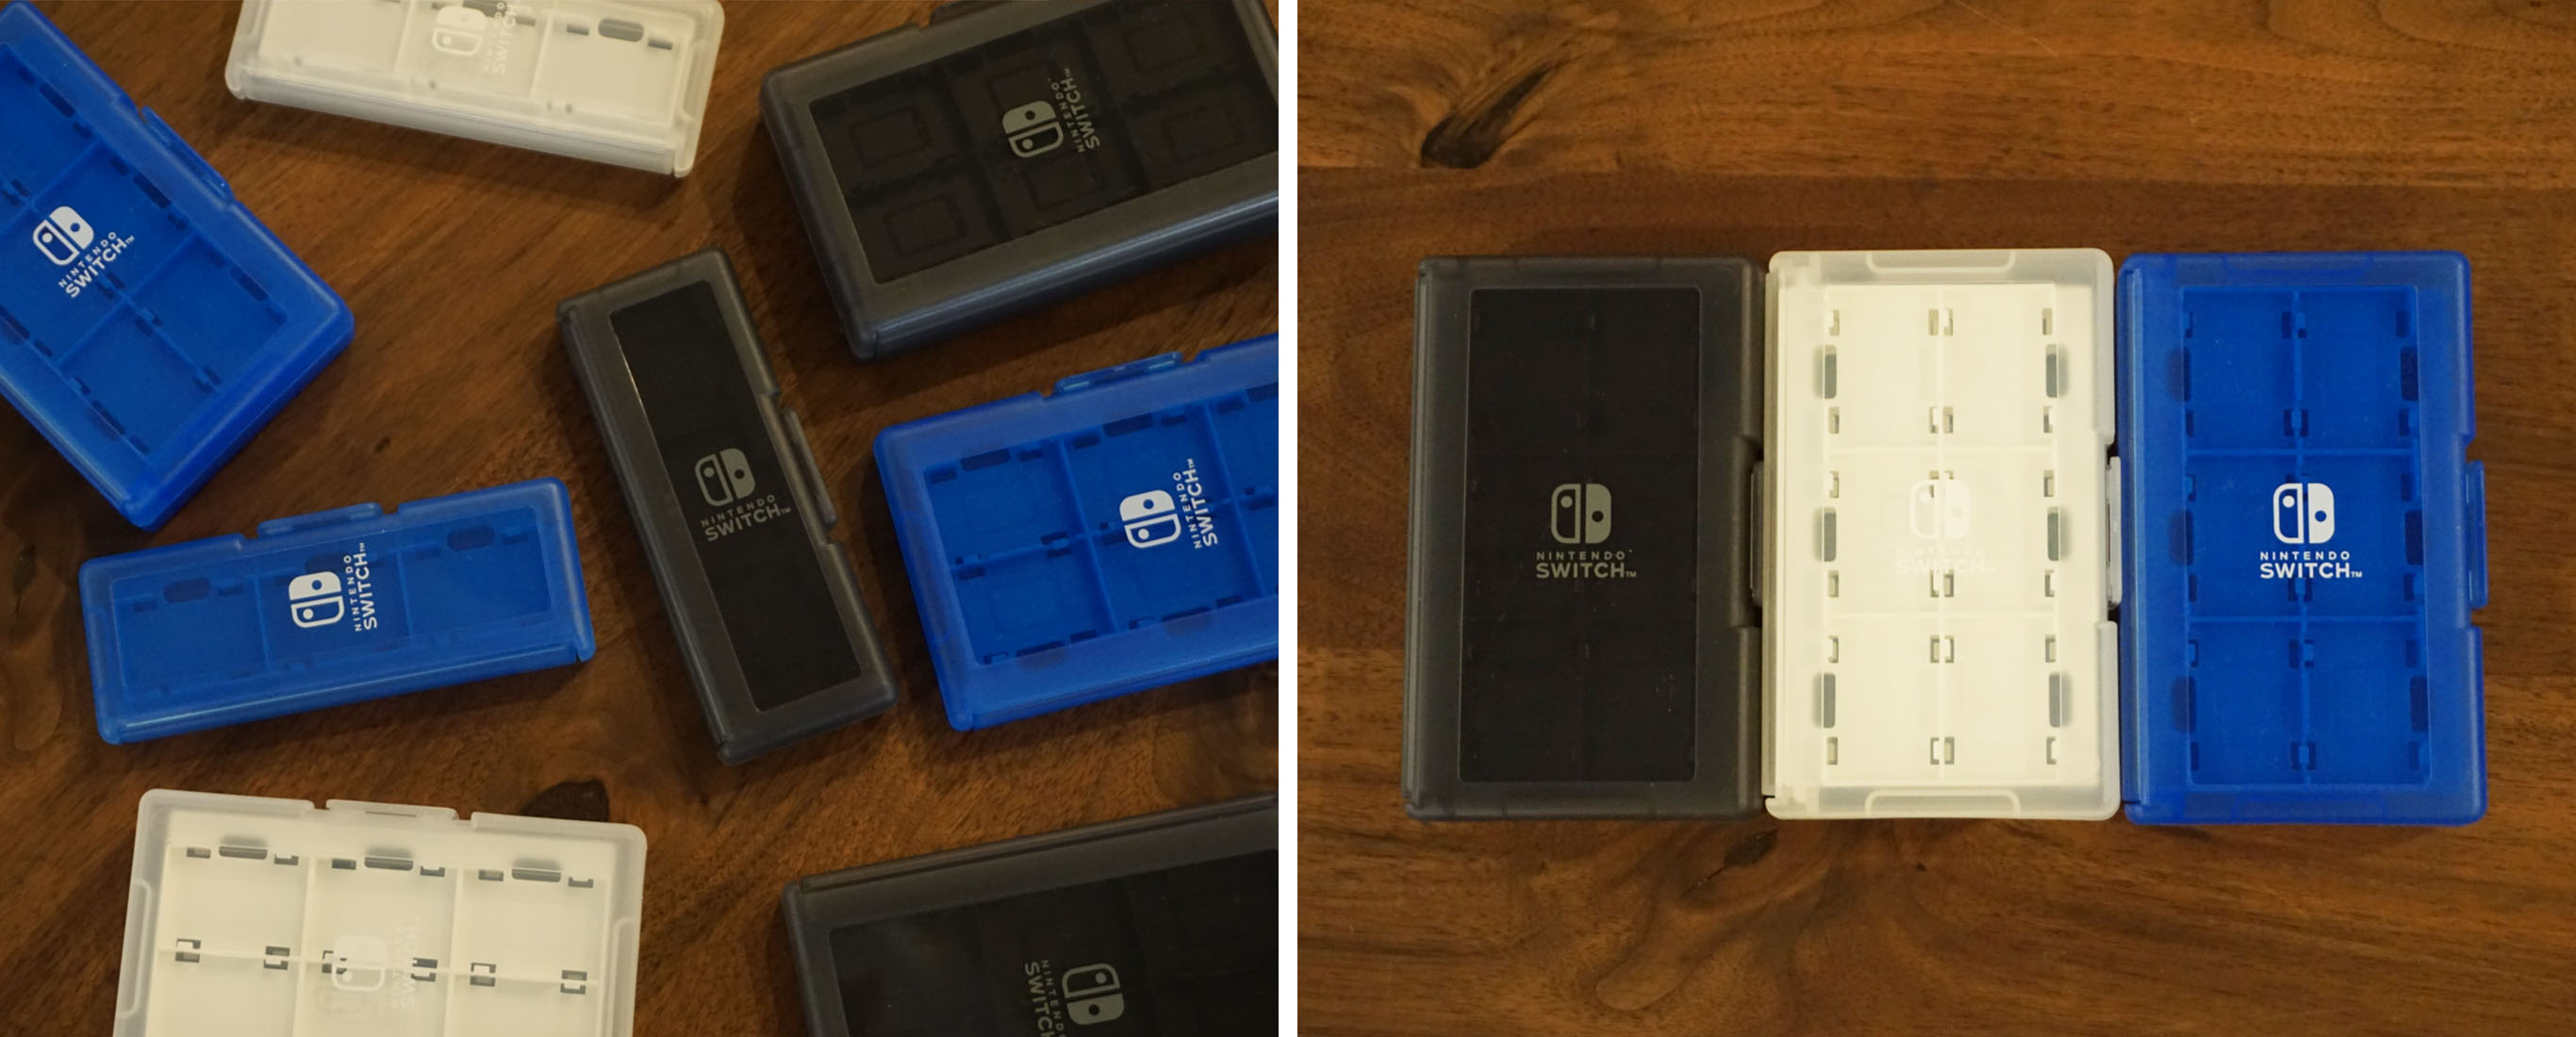 株式会社 HORI カードケース24+2 for Nintendo Switch ブラック